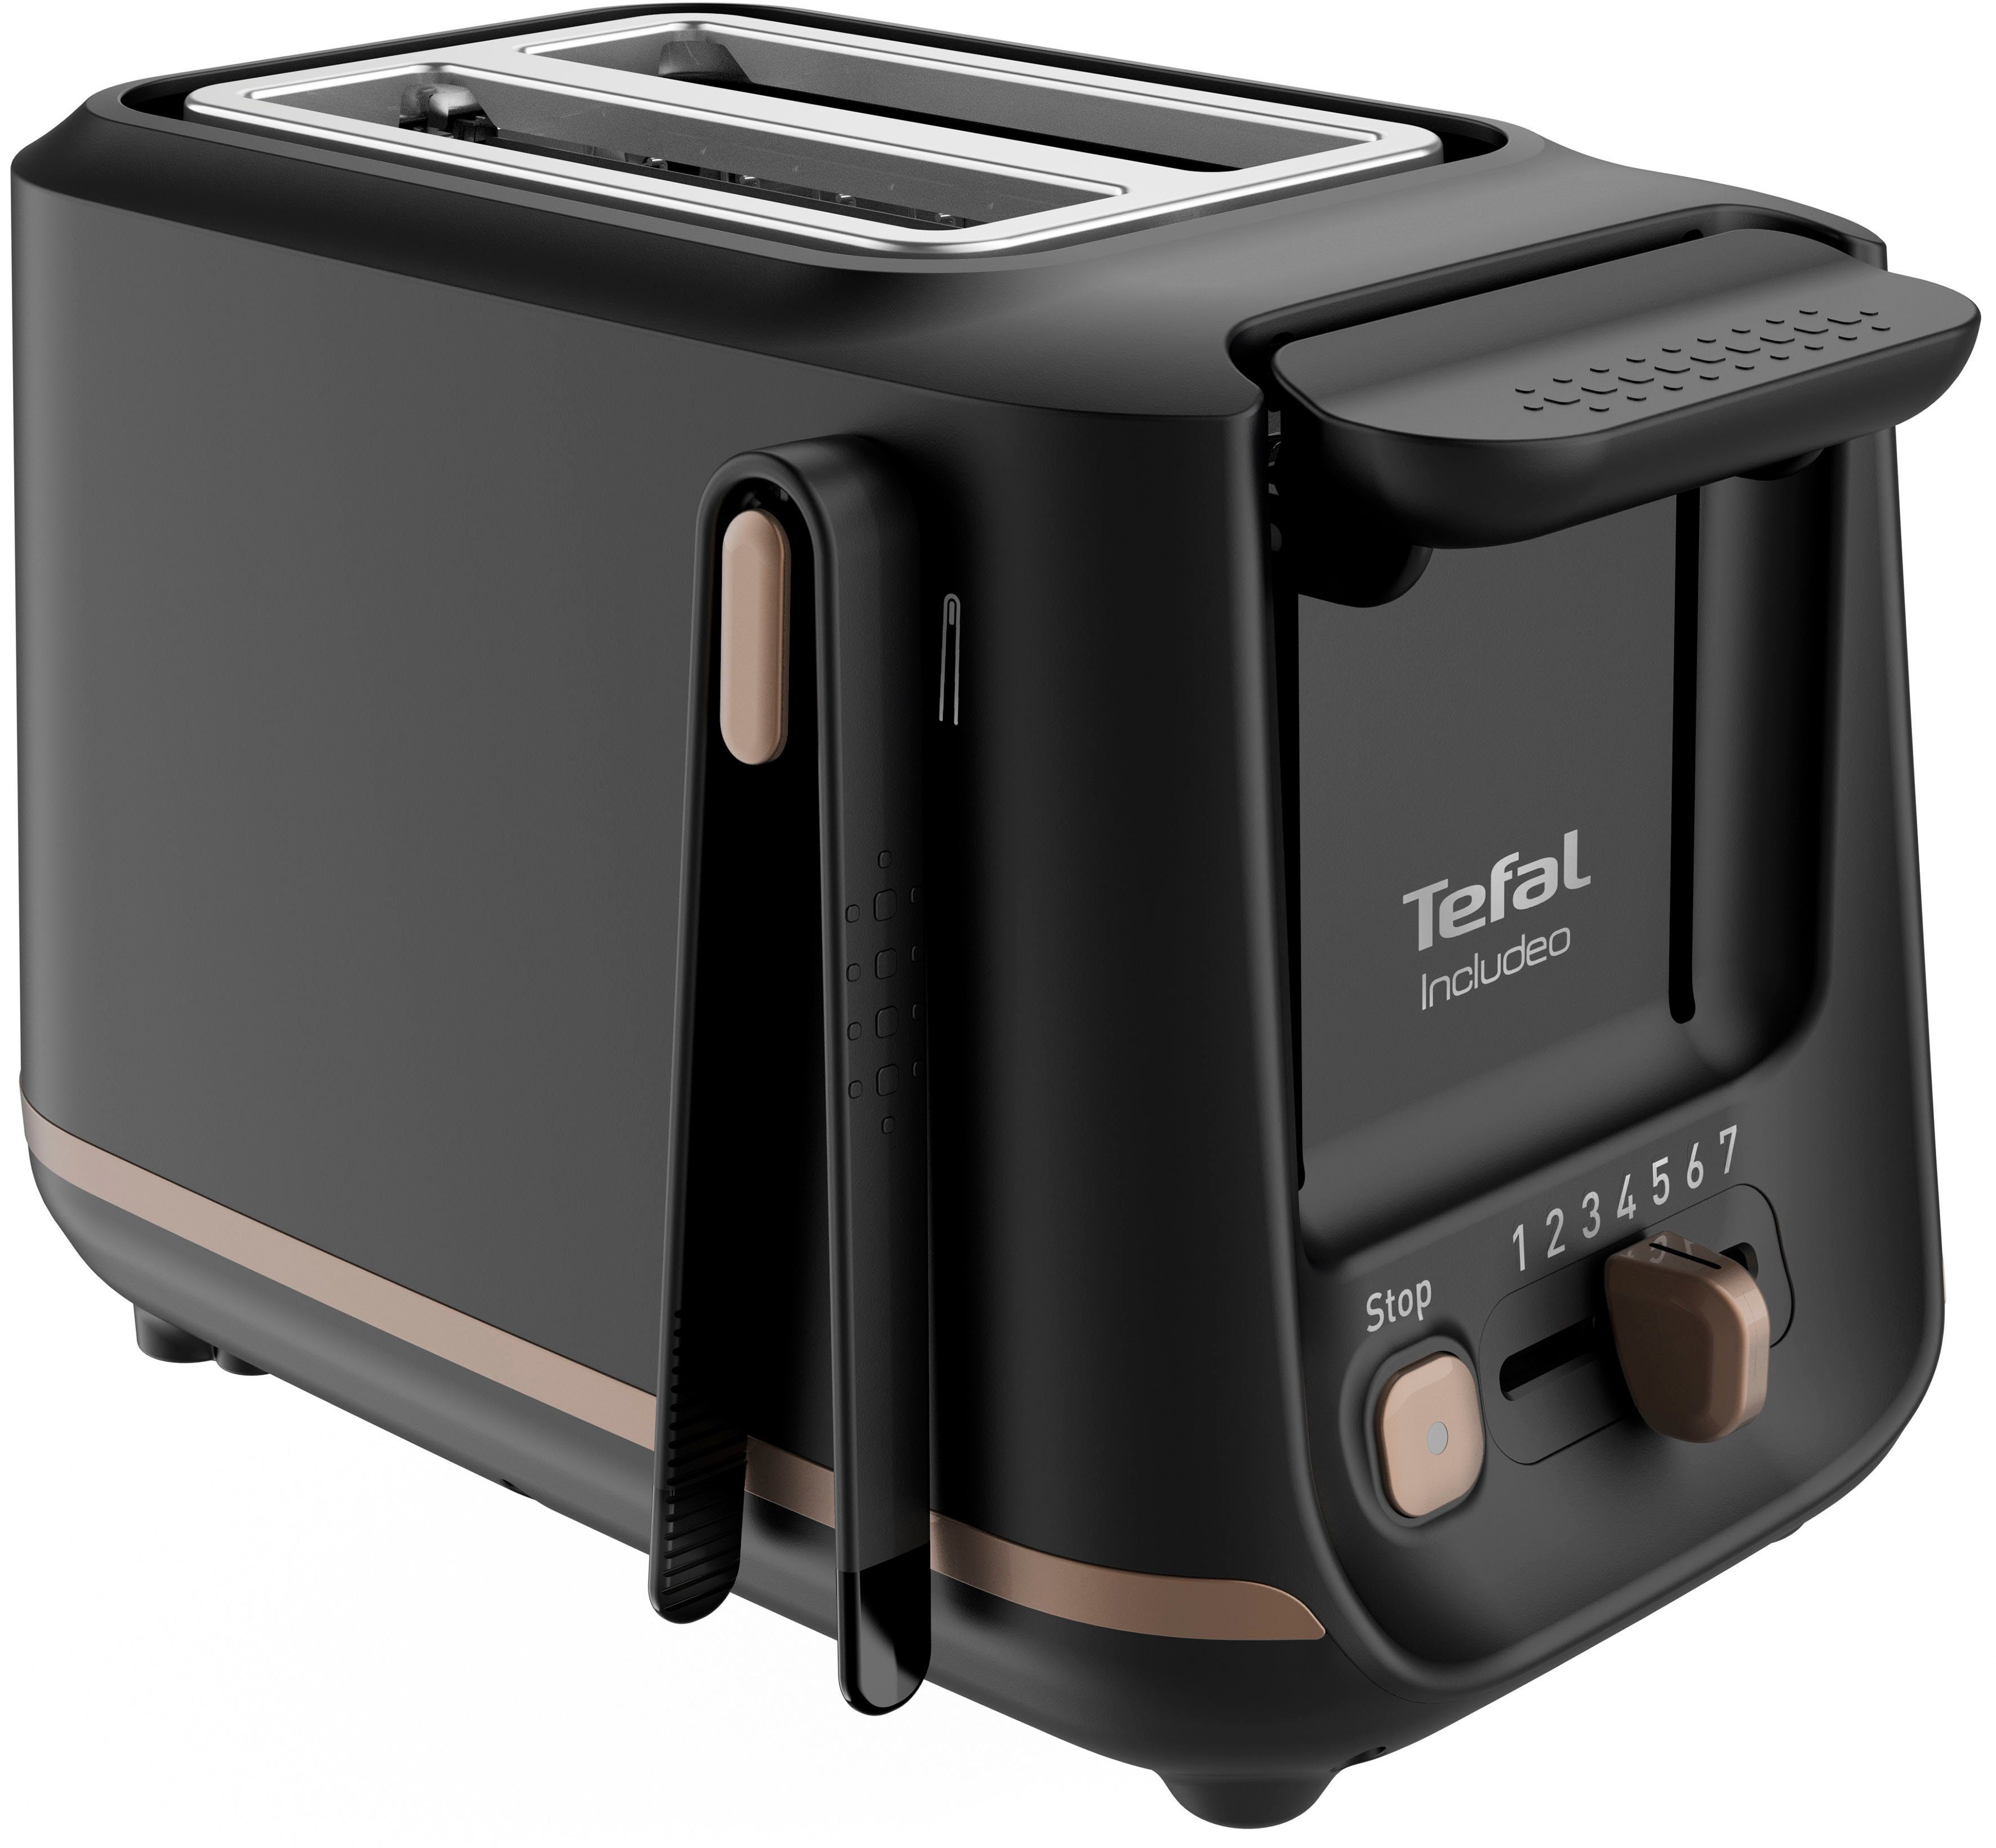 Tefal Toaster TT5338 Includeo, für 2 Scheiben, 850 W, Magnetzange, 7  Bräunungsstufen, Krümelschublade, Anhebevorrichtung, Sicher:  Silikonbeschichtung auf der Zange für sichere Benutzung